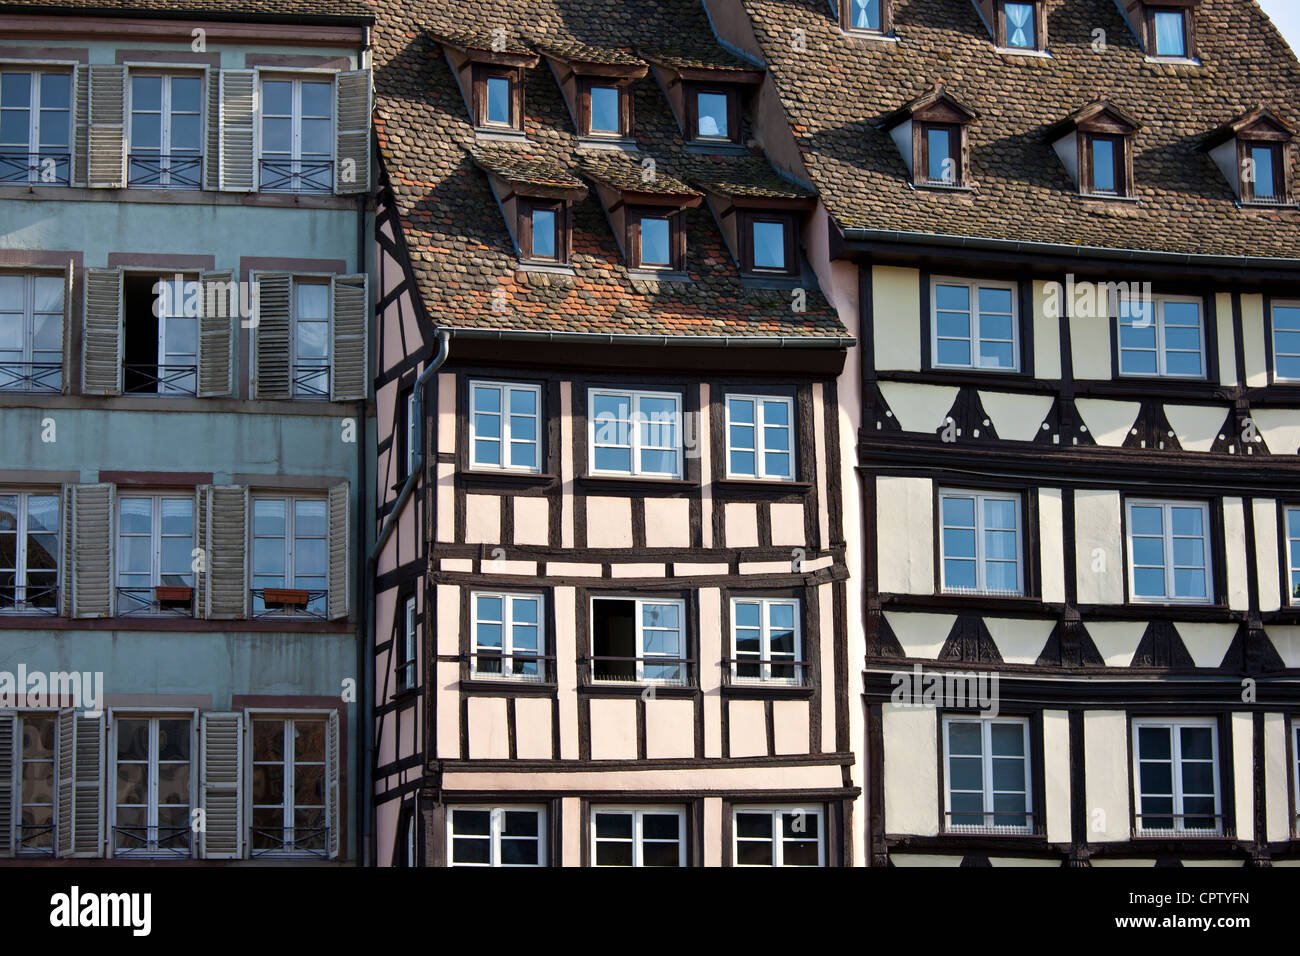 La arquitectura medieval tradicional de madera canalside edificios por canal de navegación en Estrasburgo ciudad vieja Alsace Francia Foto de stock